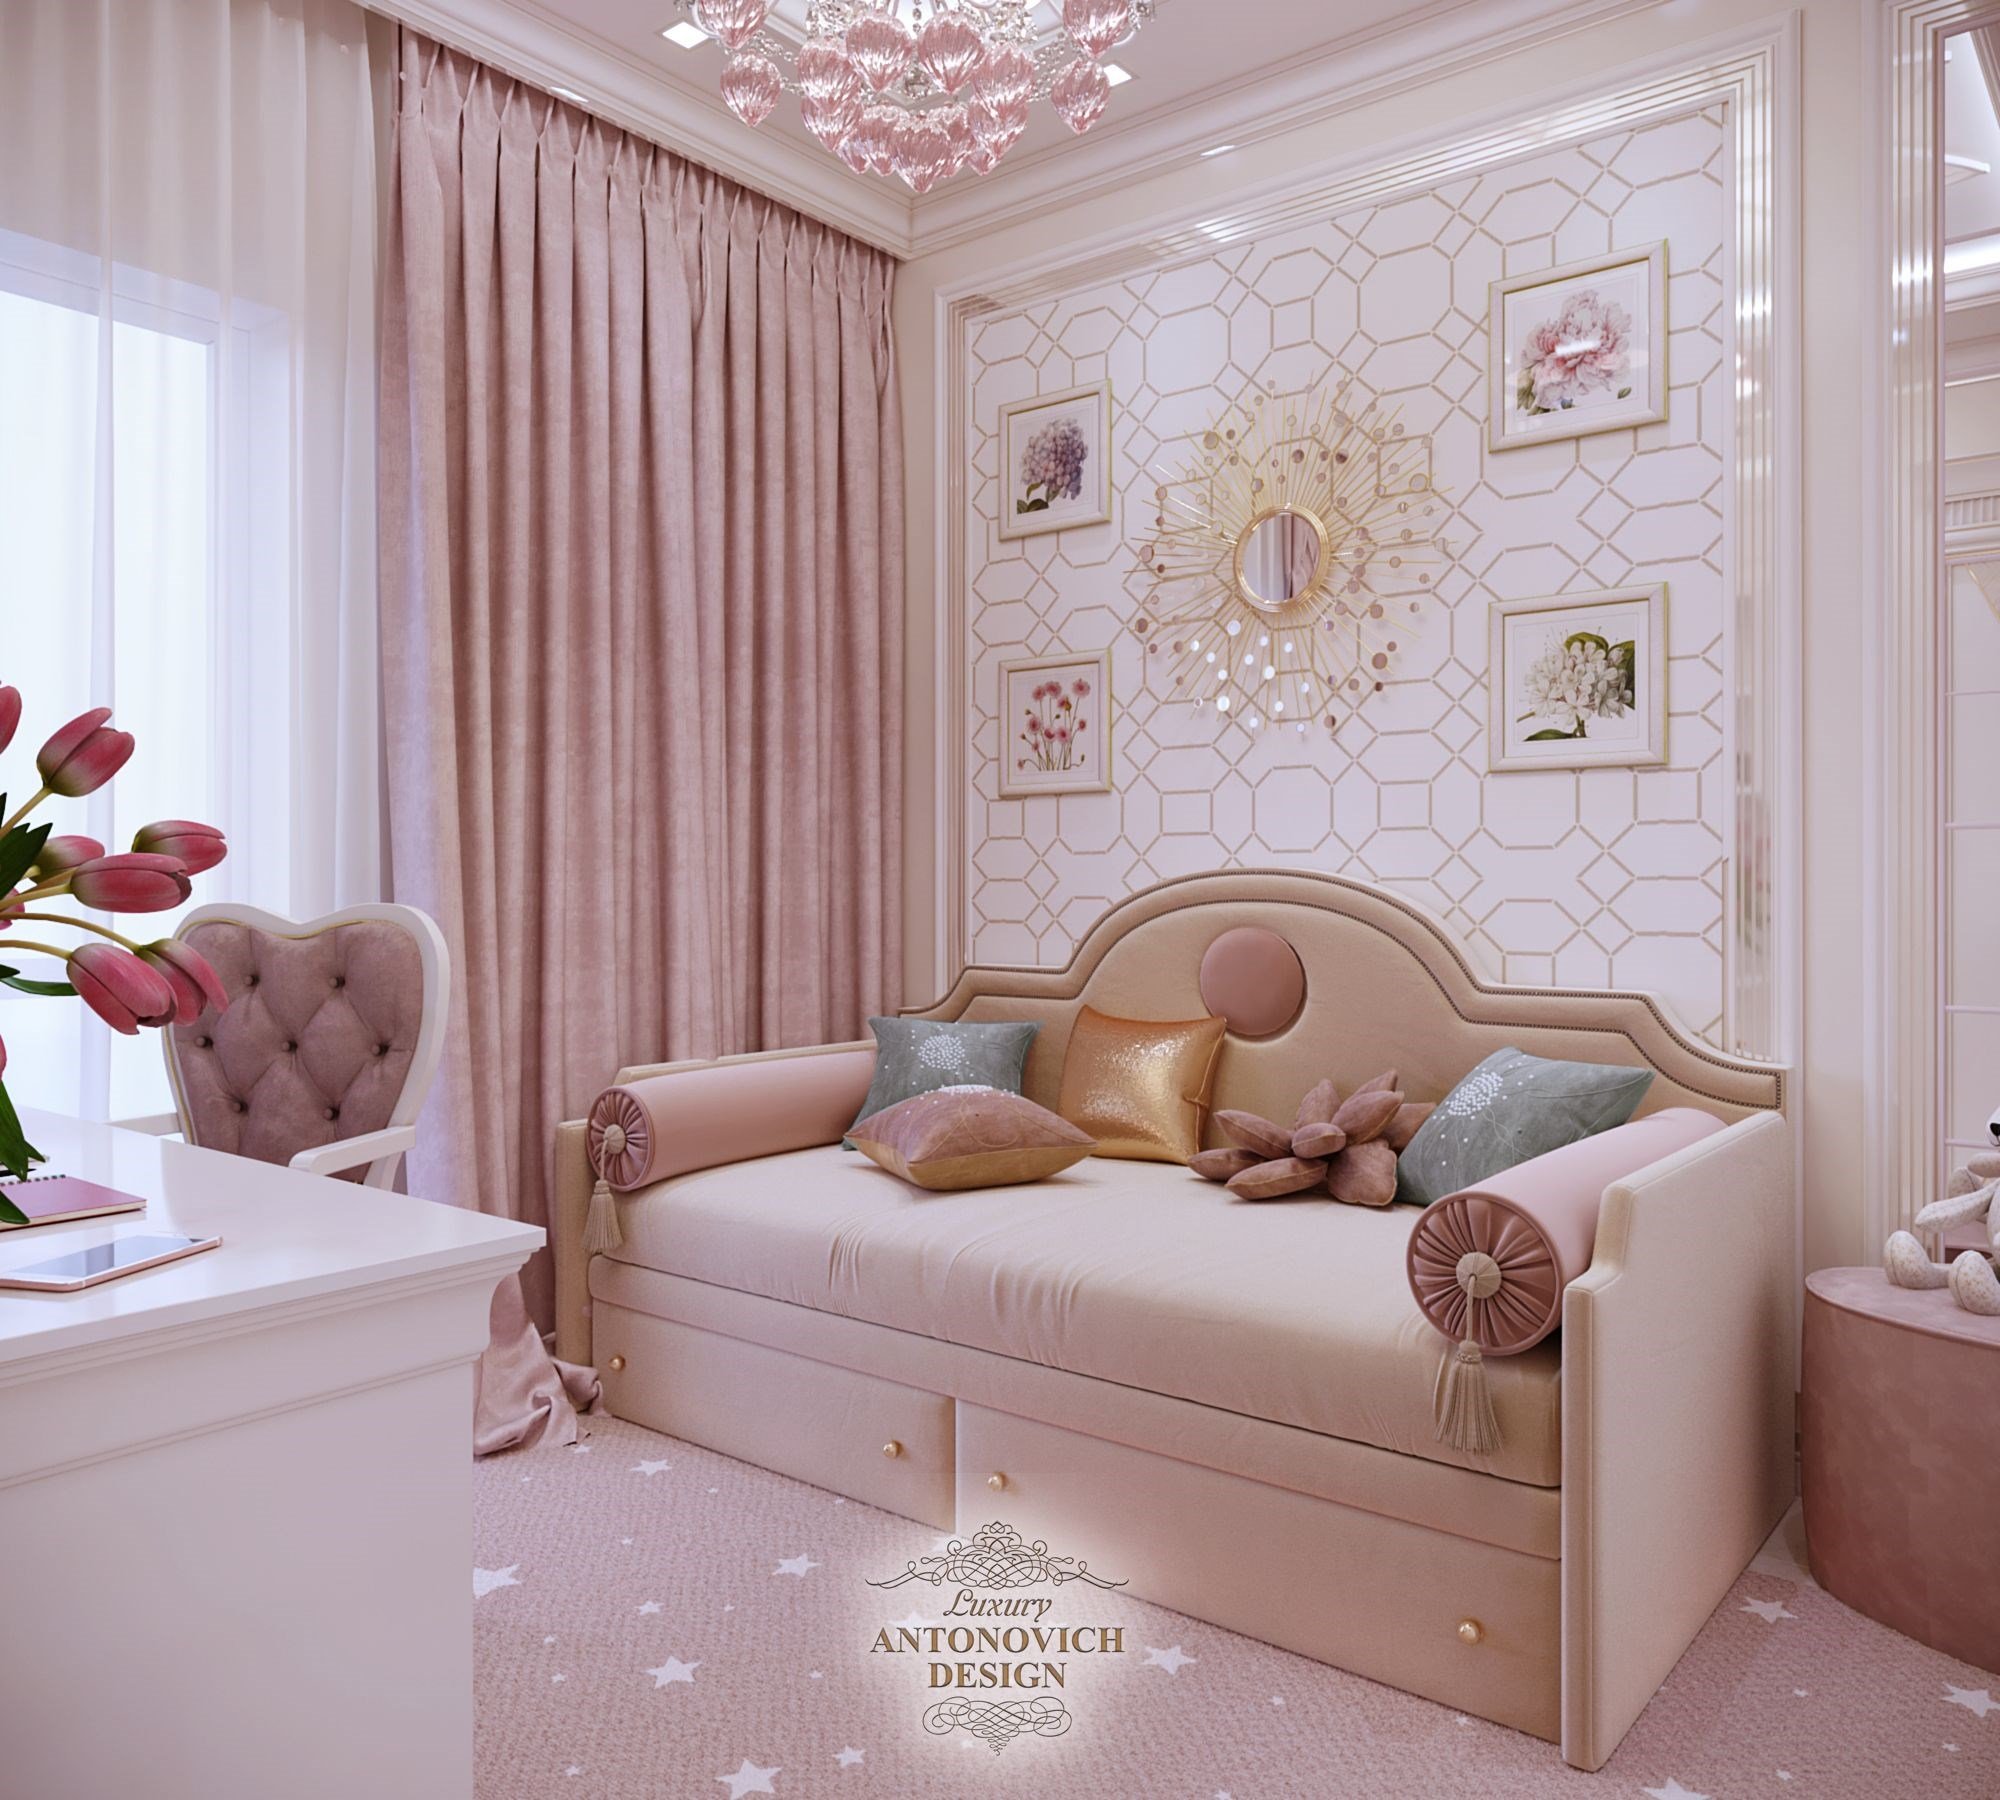 Диван в детской спальне Luxury ANTONOVICH DESIGN